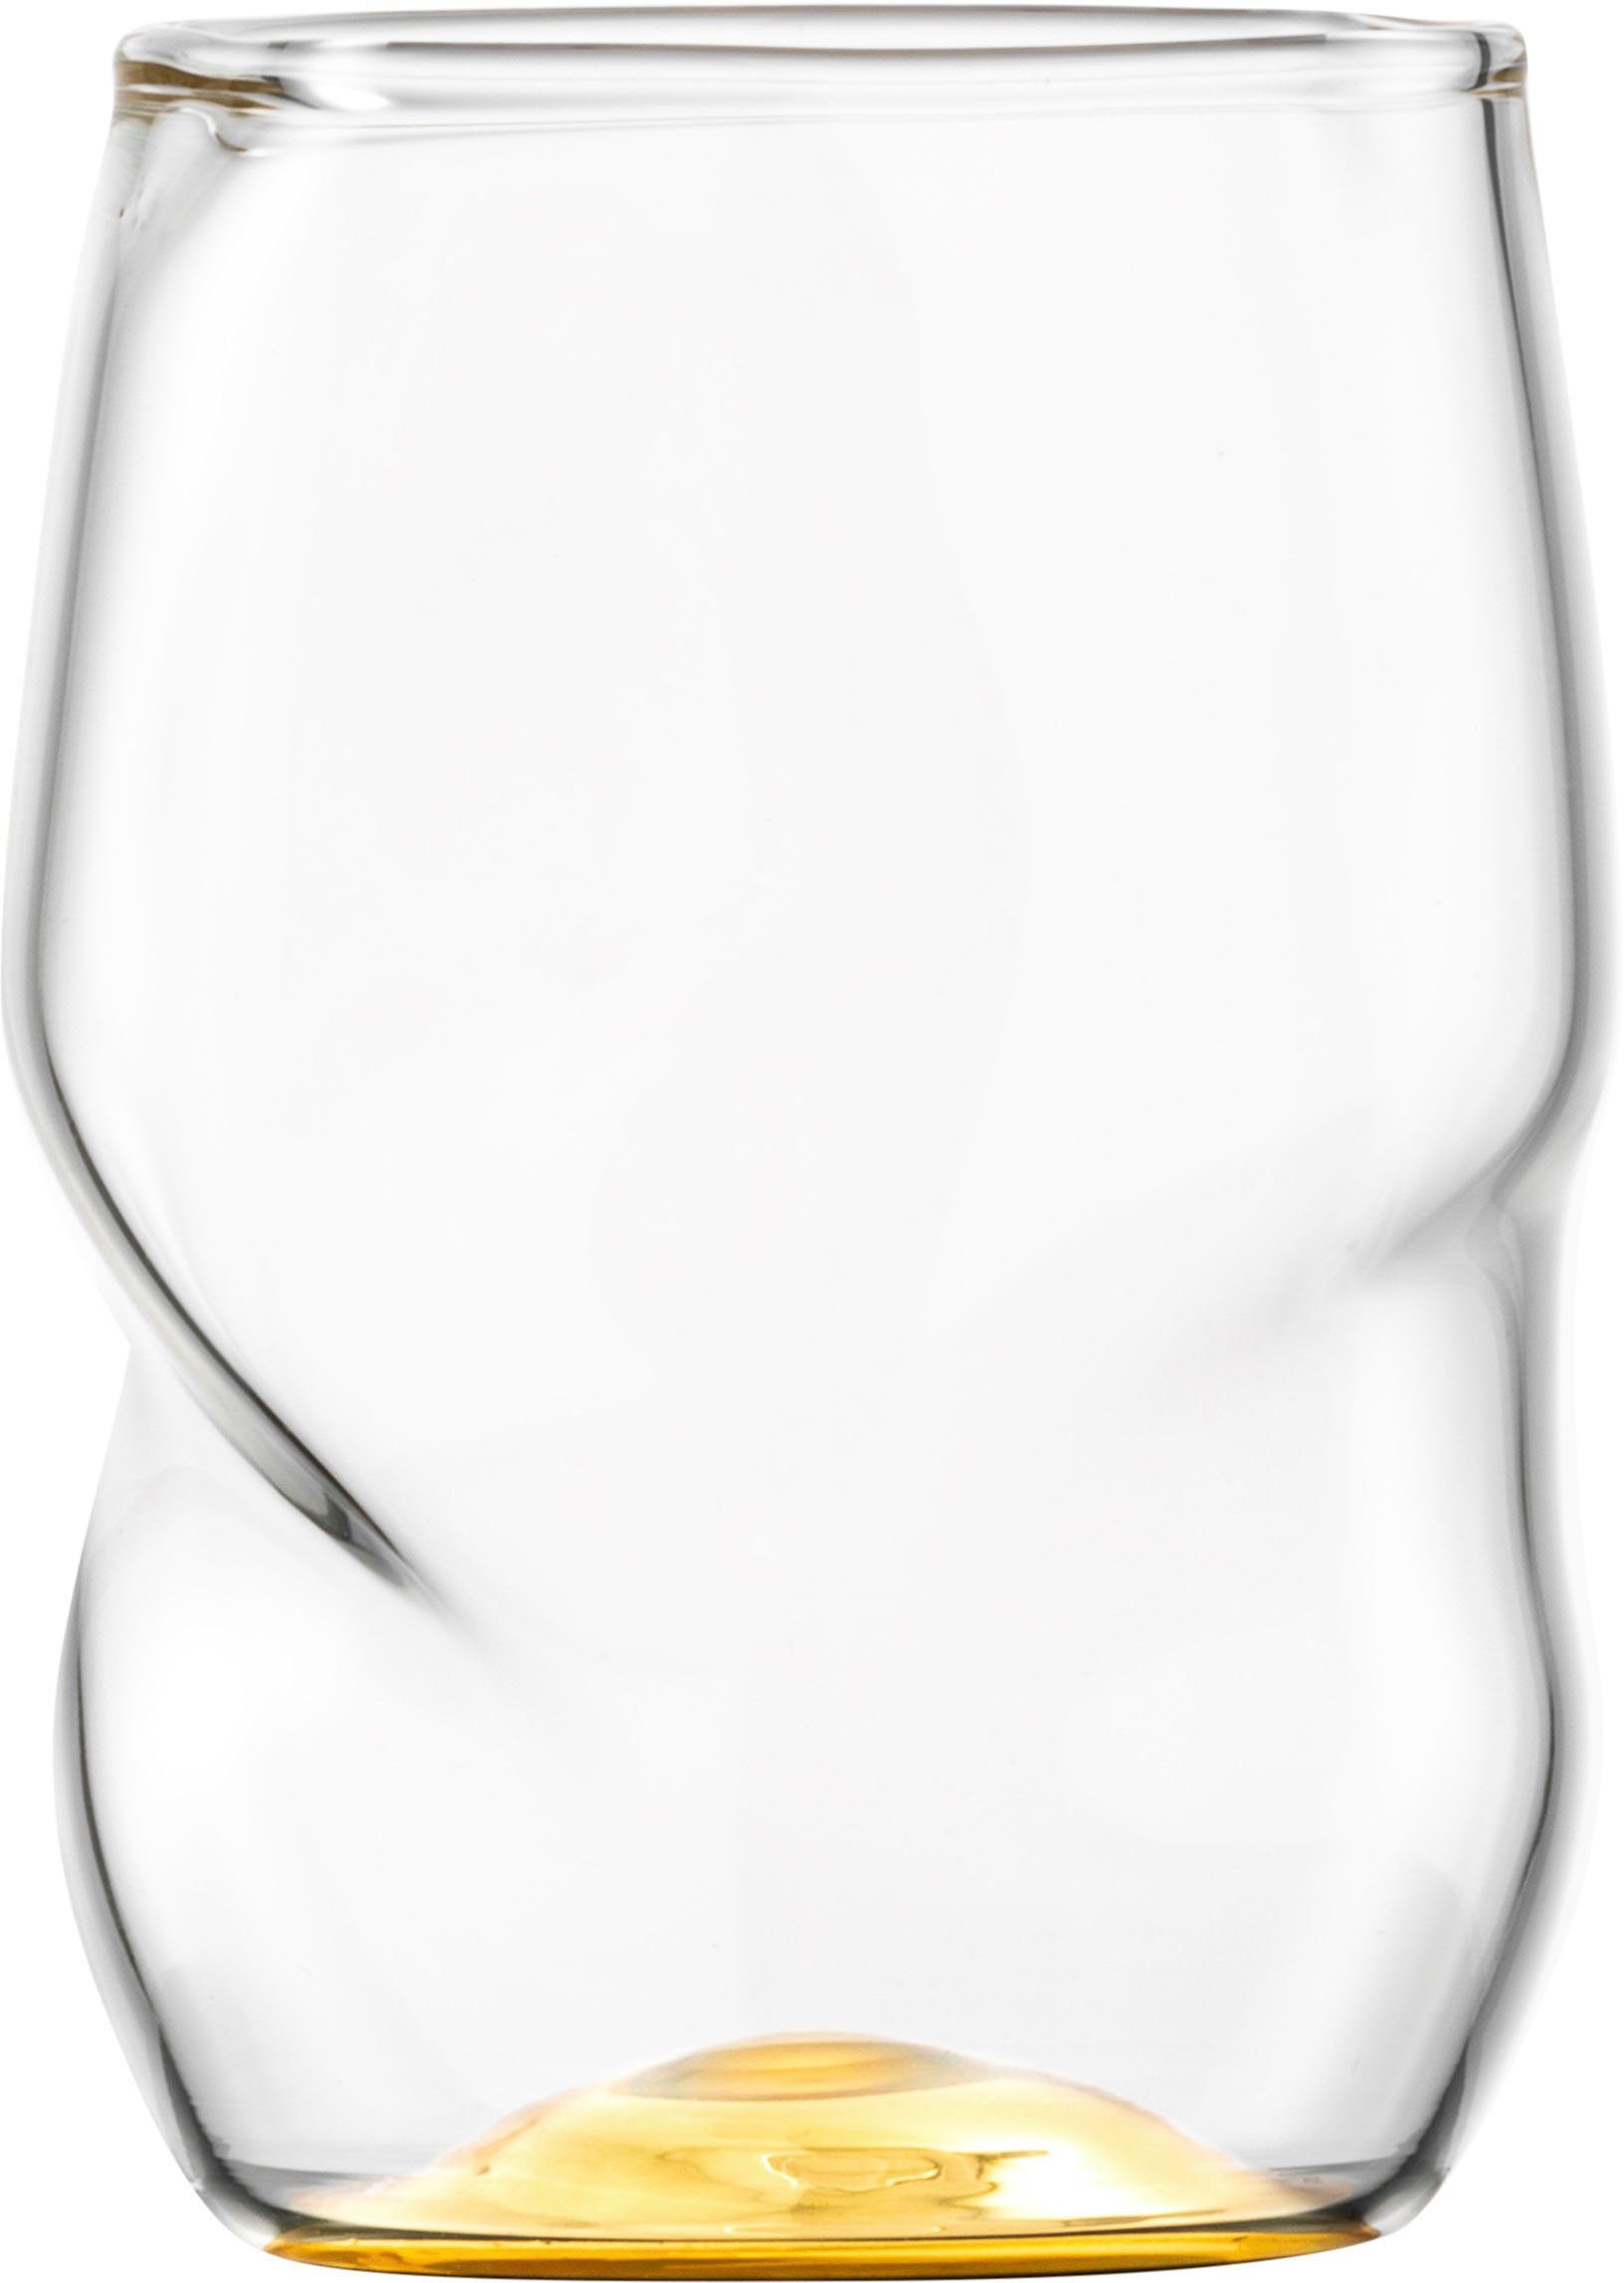 Eisch Borosilikatglas, Echtgold, veredelt Becher UNIK, ml 2-teilig, mit Allroundbecher, 300